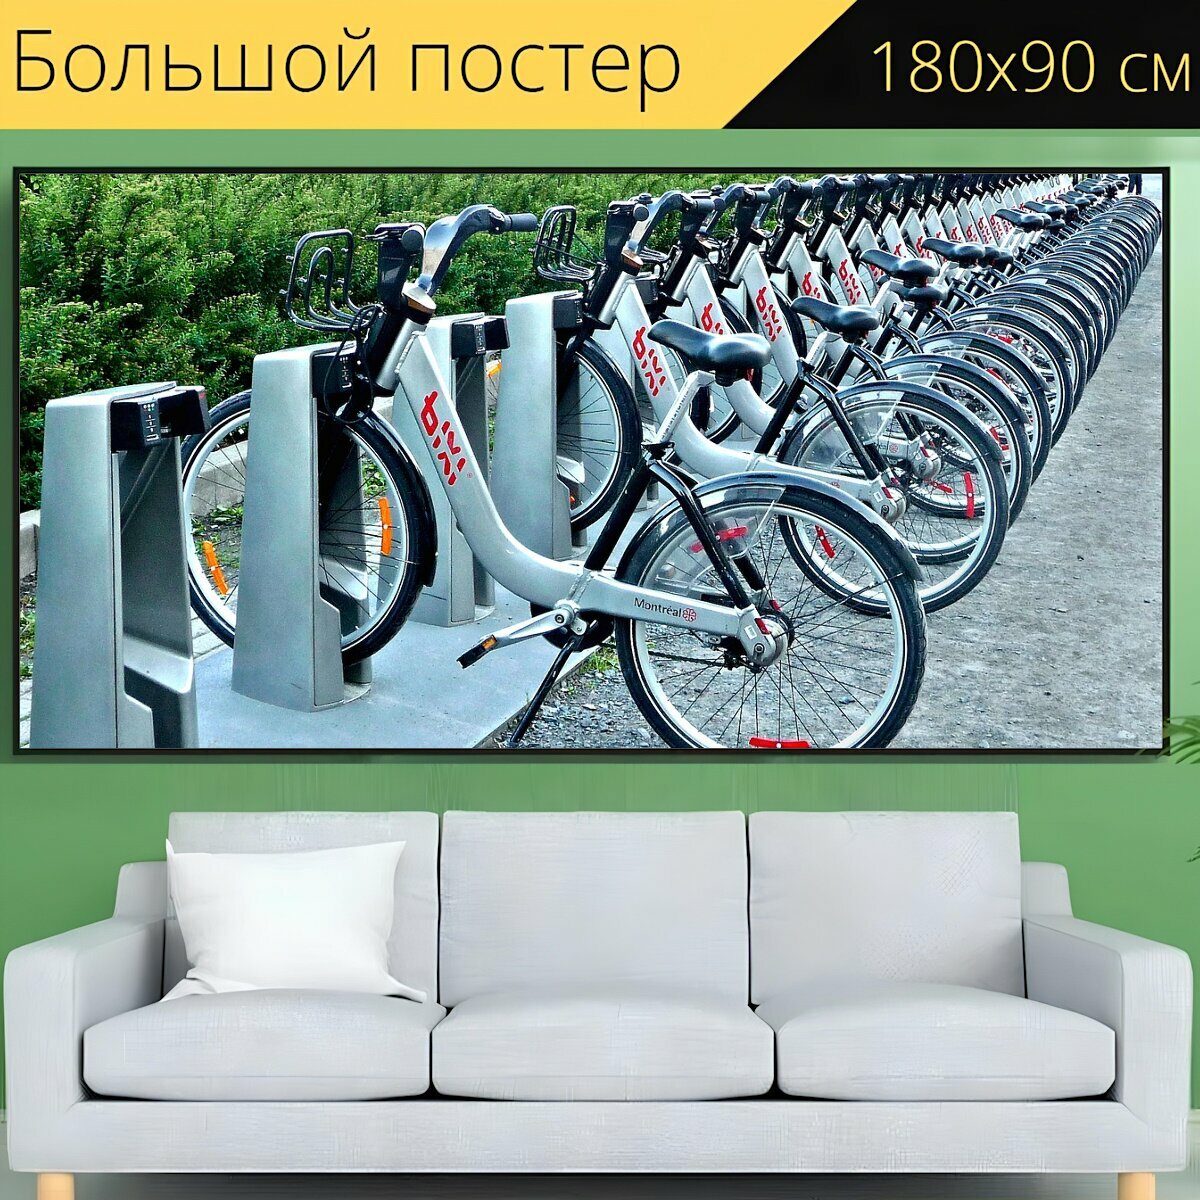 Большой постер "Велосипед, транспорт, велосипедов" 180 x 90 см. для интерьера